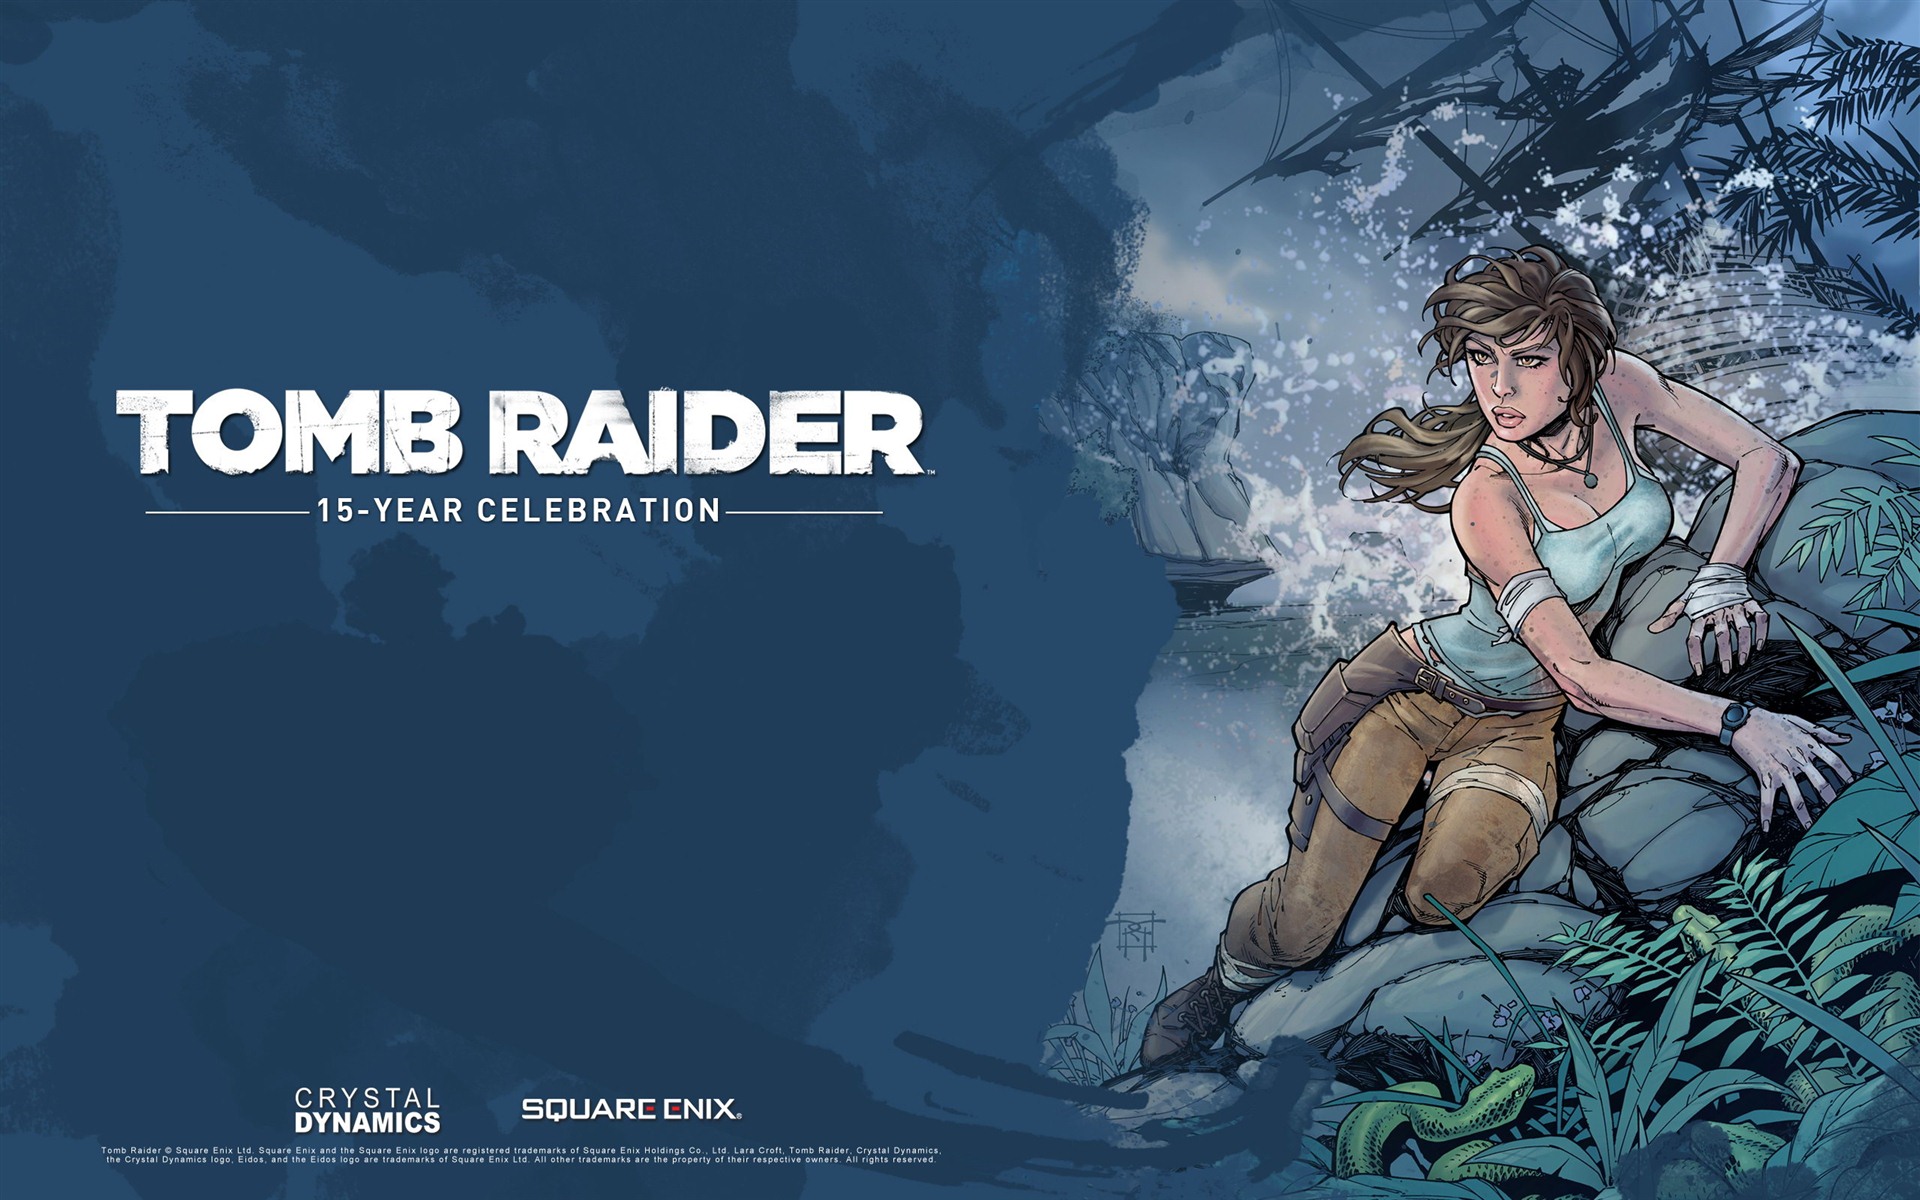 Tomb Raider 15-Year Celebration 古墓丽影15周年纪念版 高清壁纸12 - 1920x1200